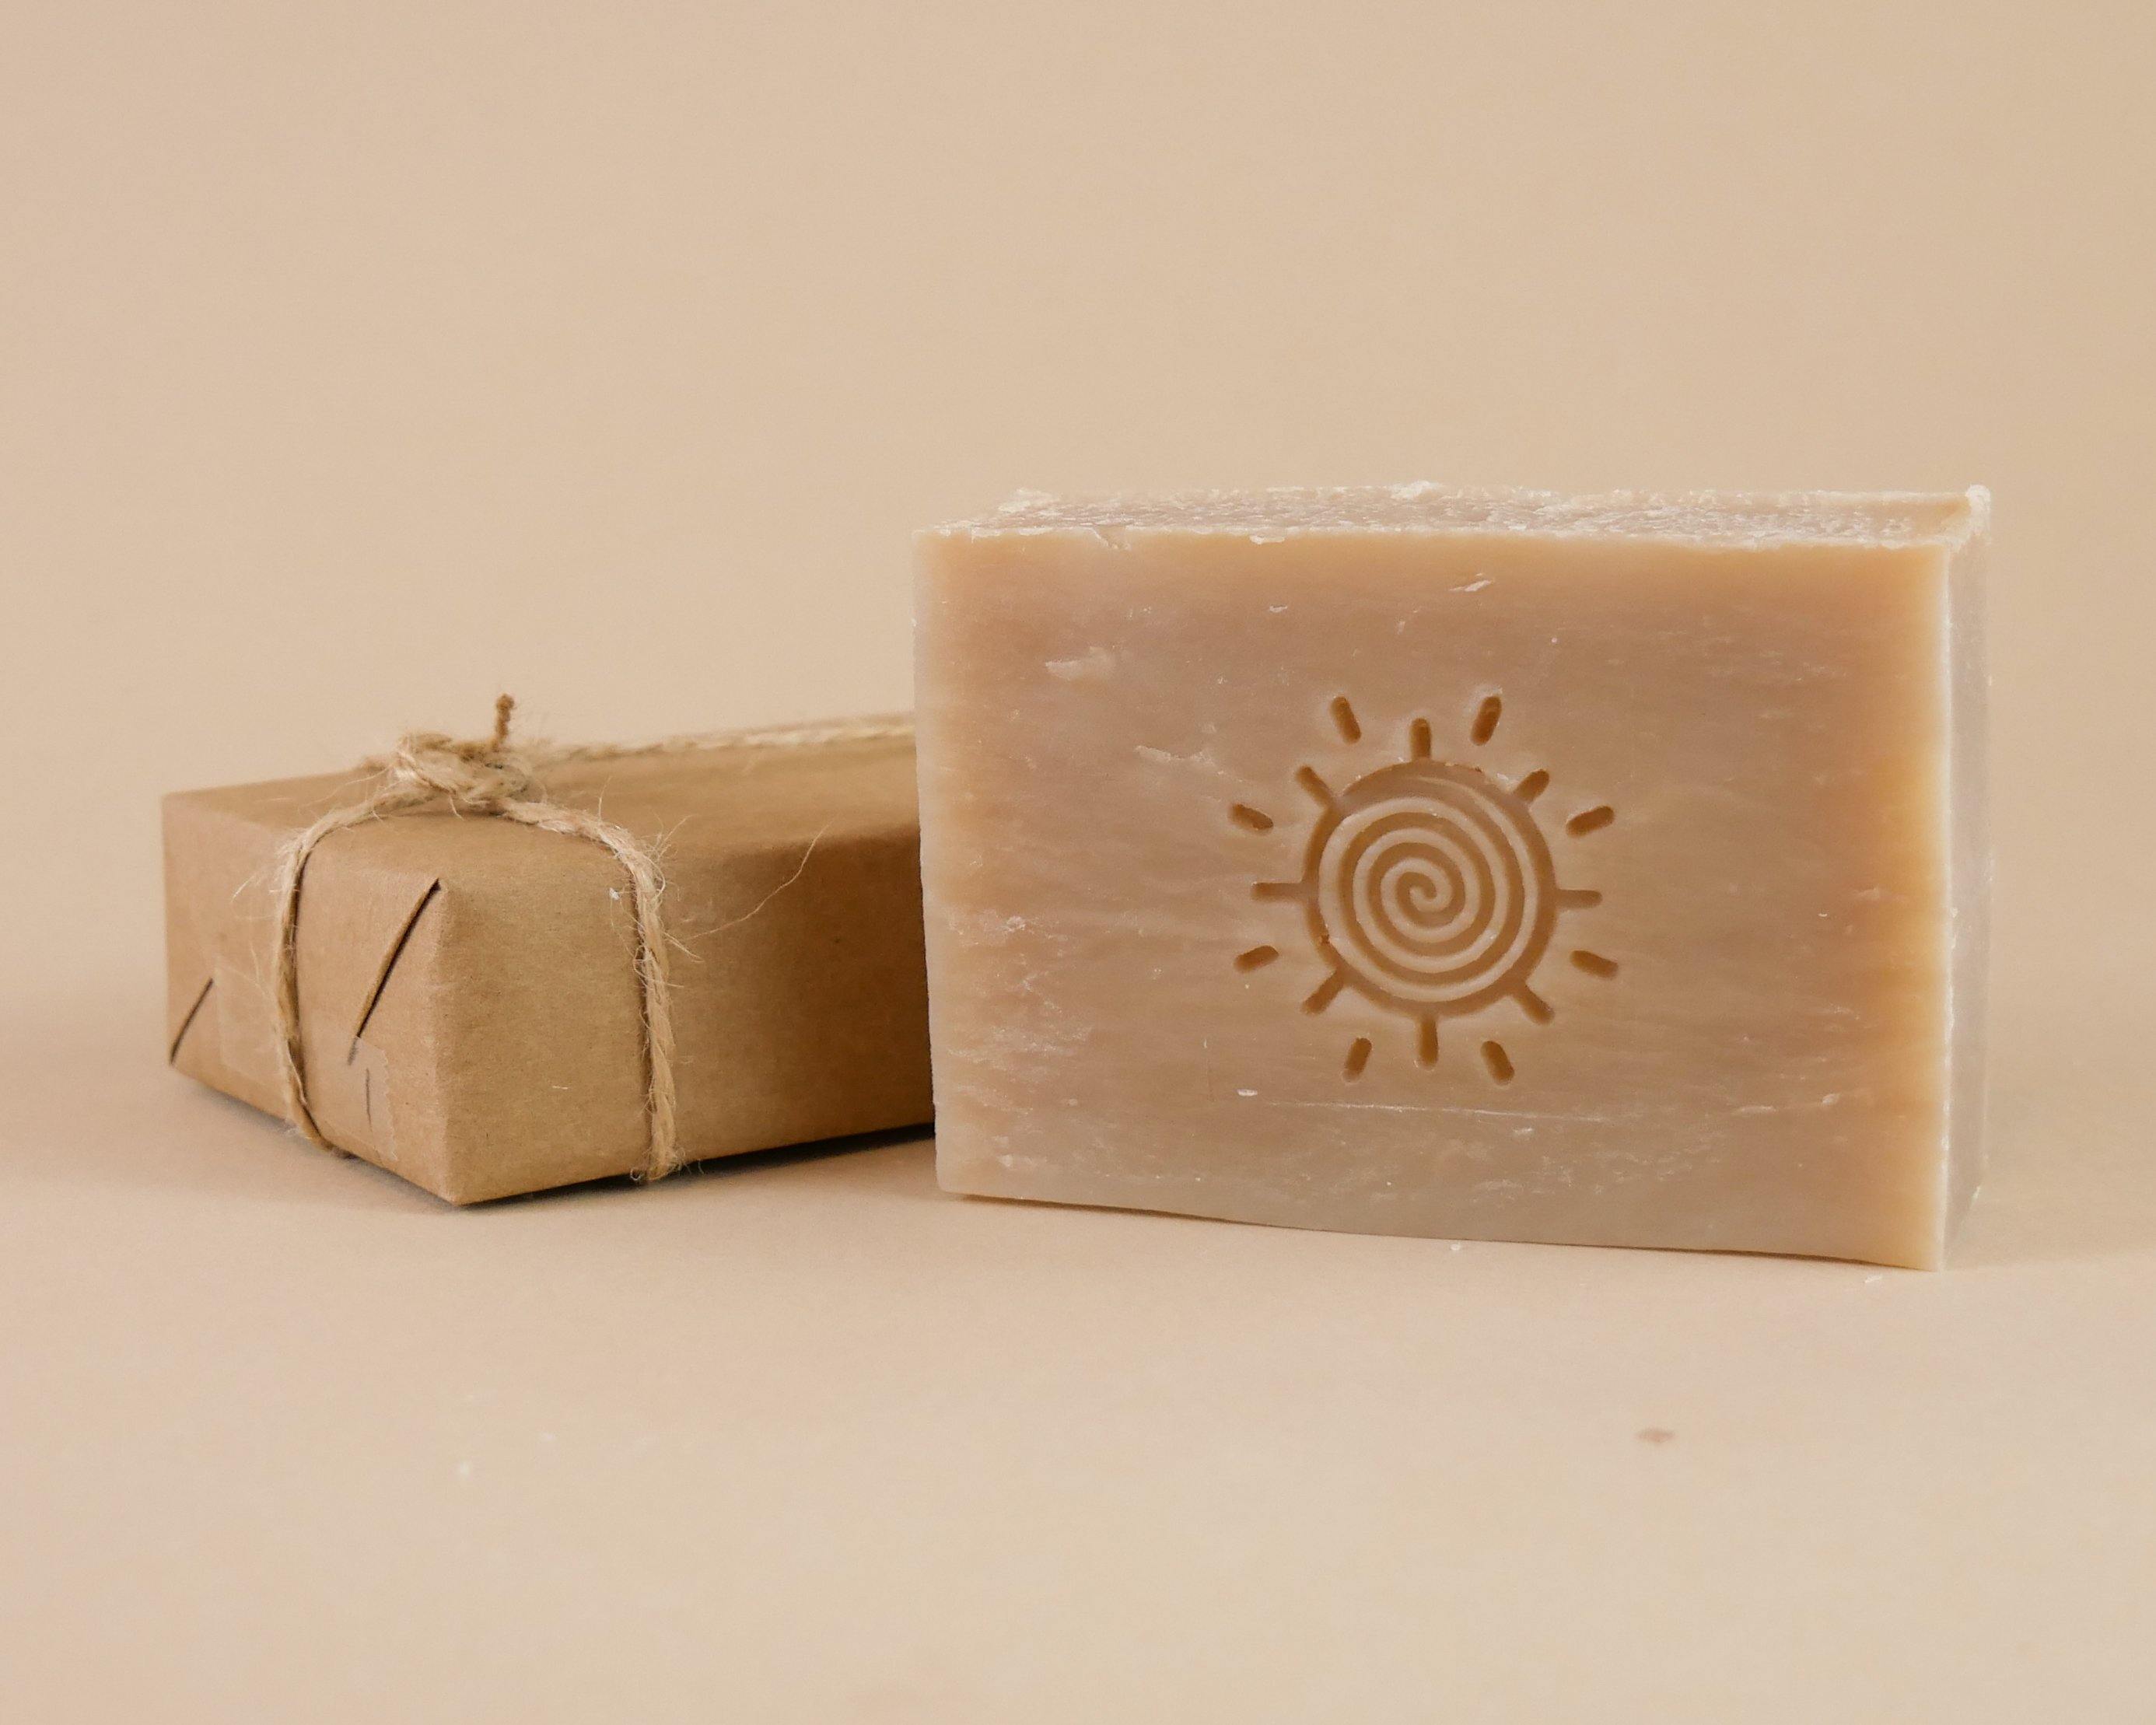 Frankincense & Myrrh Handmade Soap